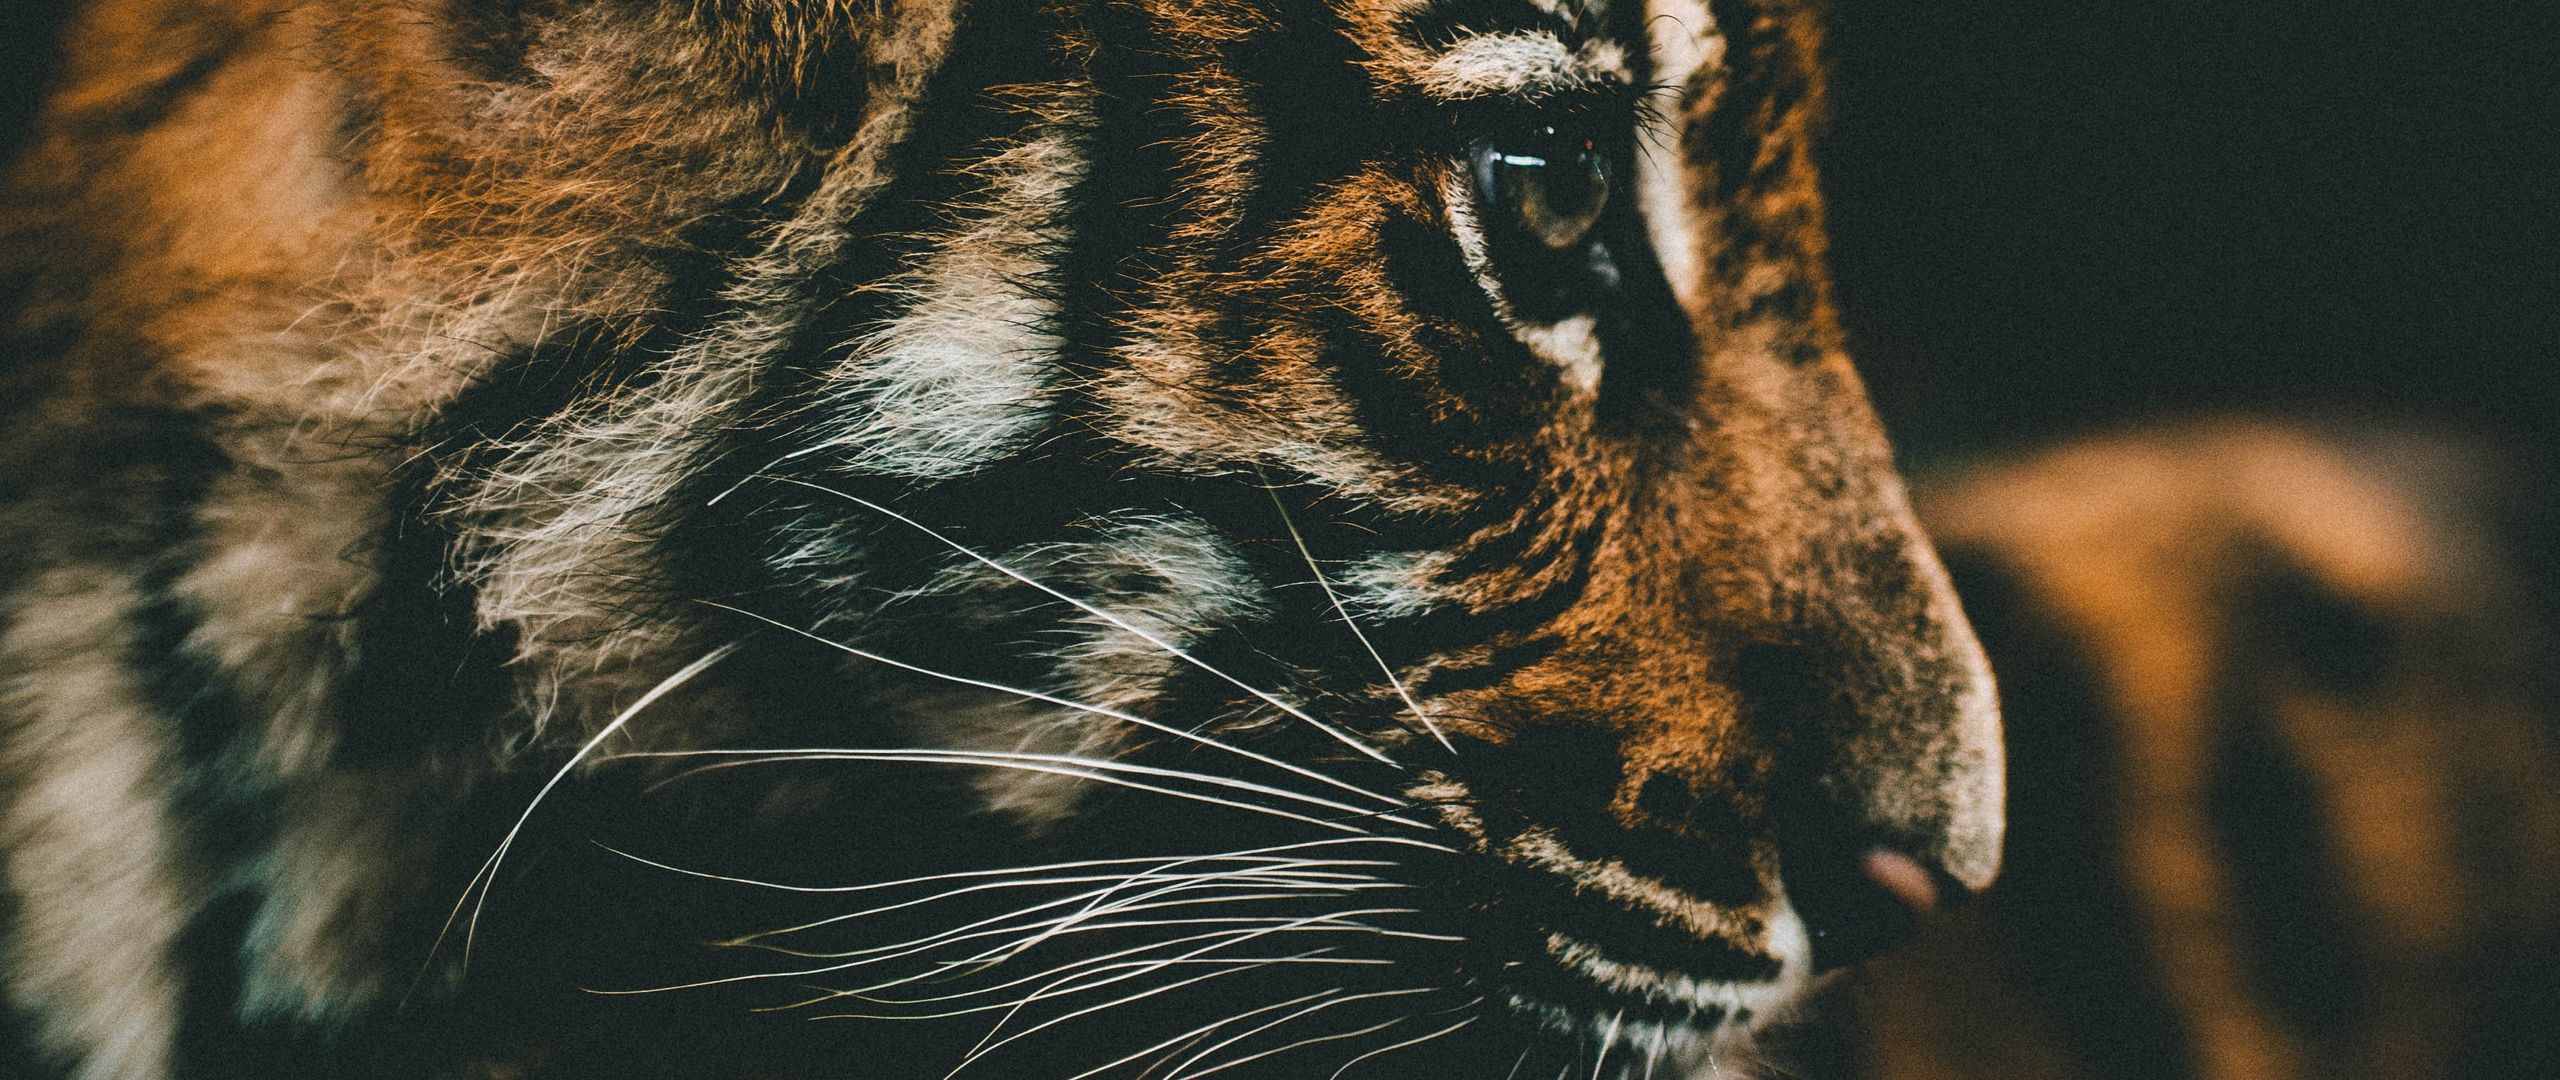 Download wallpaper 2560x1080 tiger cub, cub, muzzle, profile dual